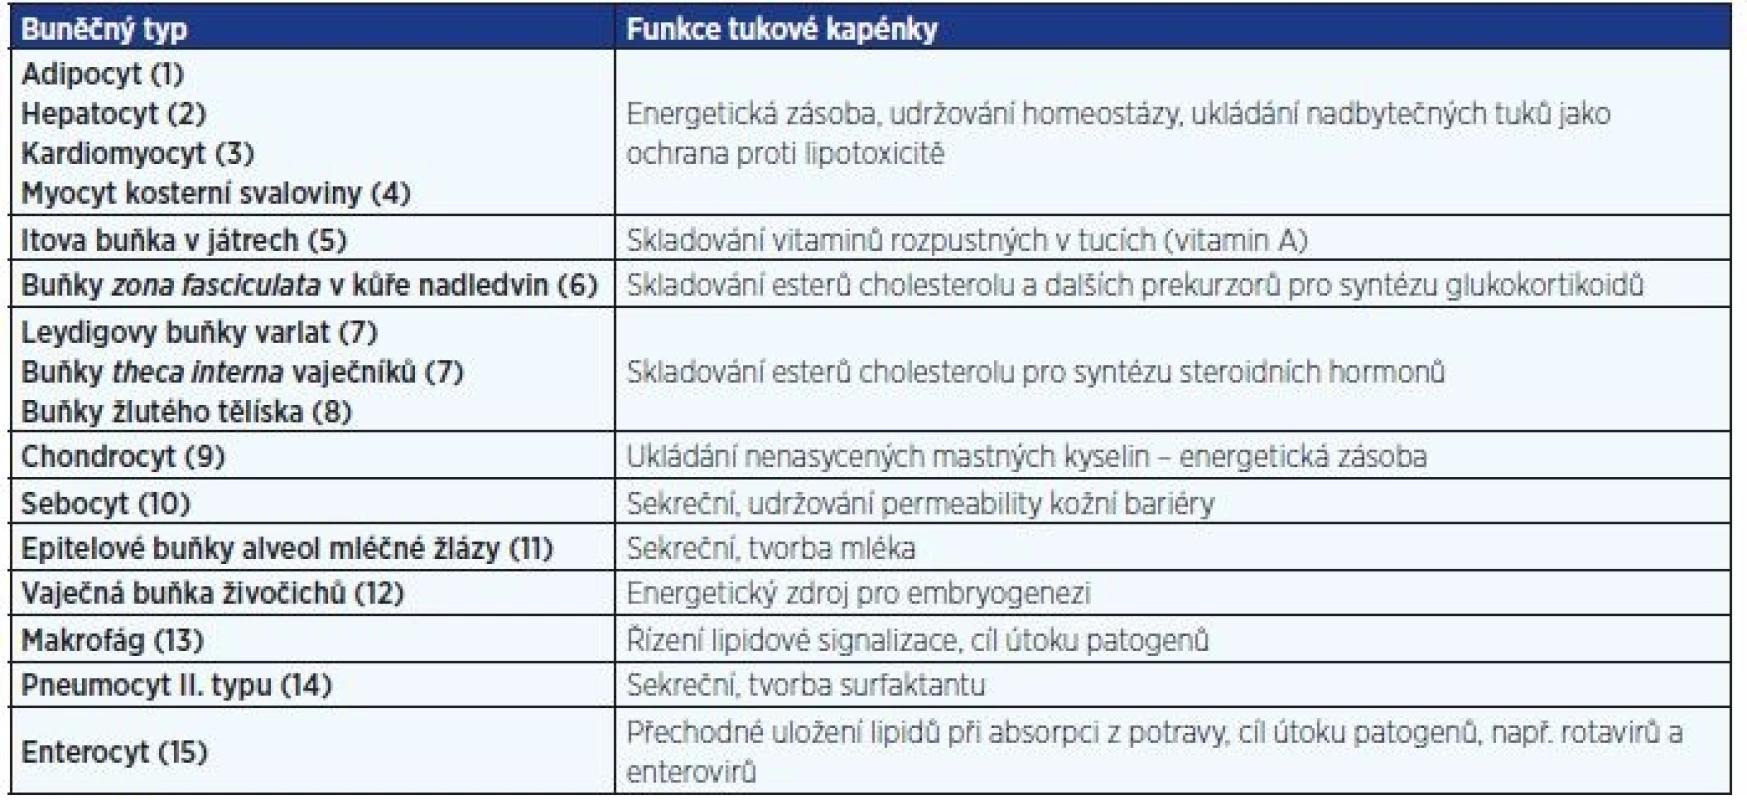 Příklady výskytu tukových kapének a jejich funkce v různých buněčných typech